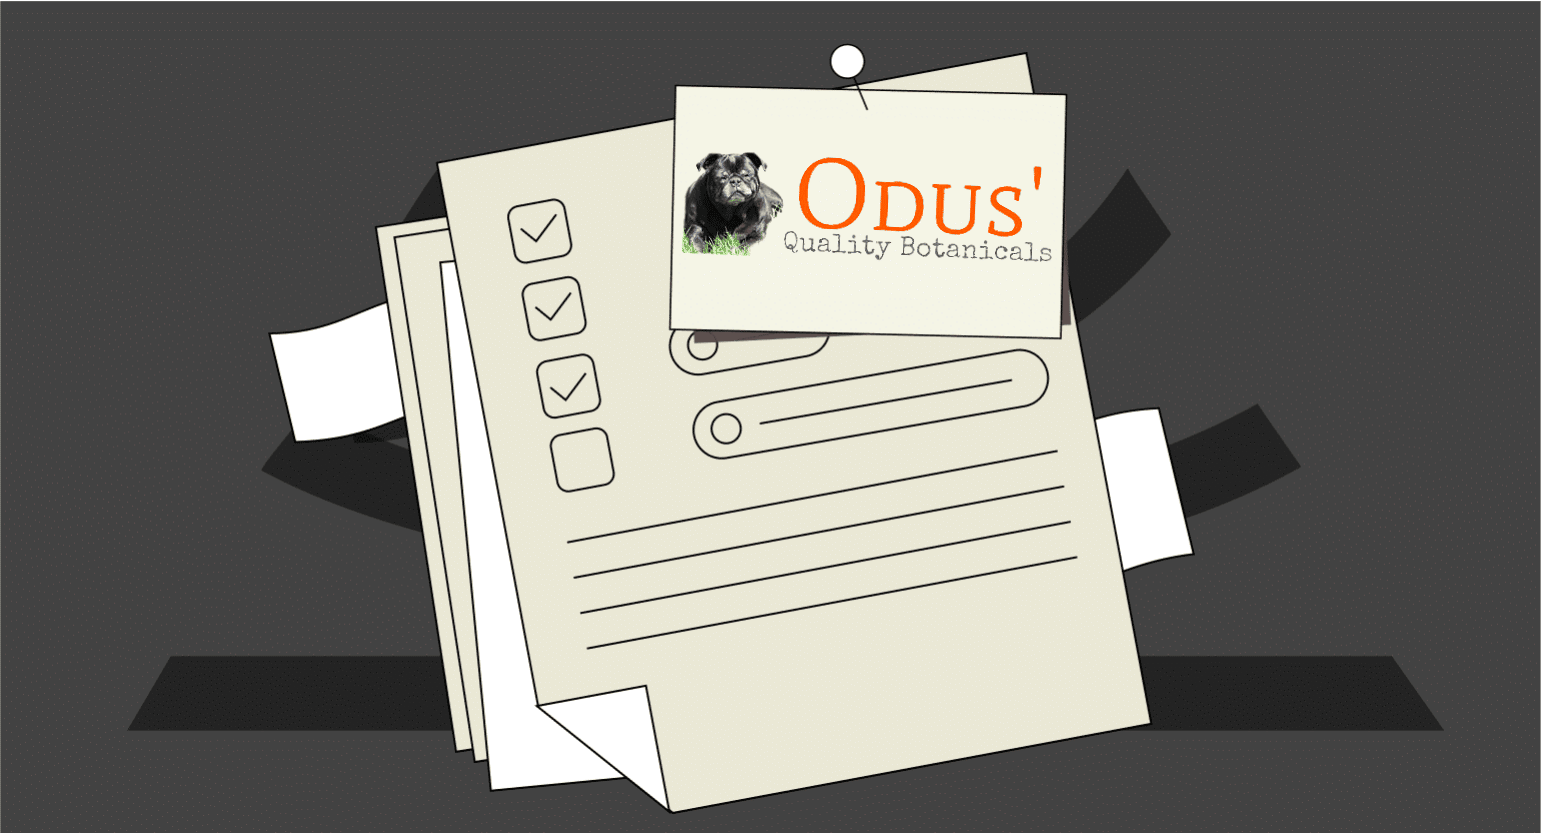 Odus’ Quality Botanicals